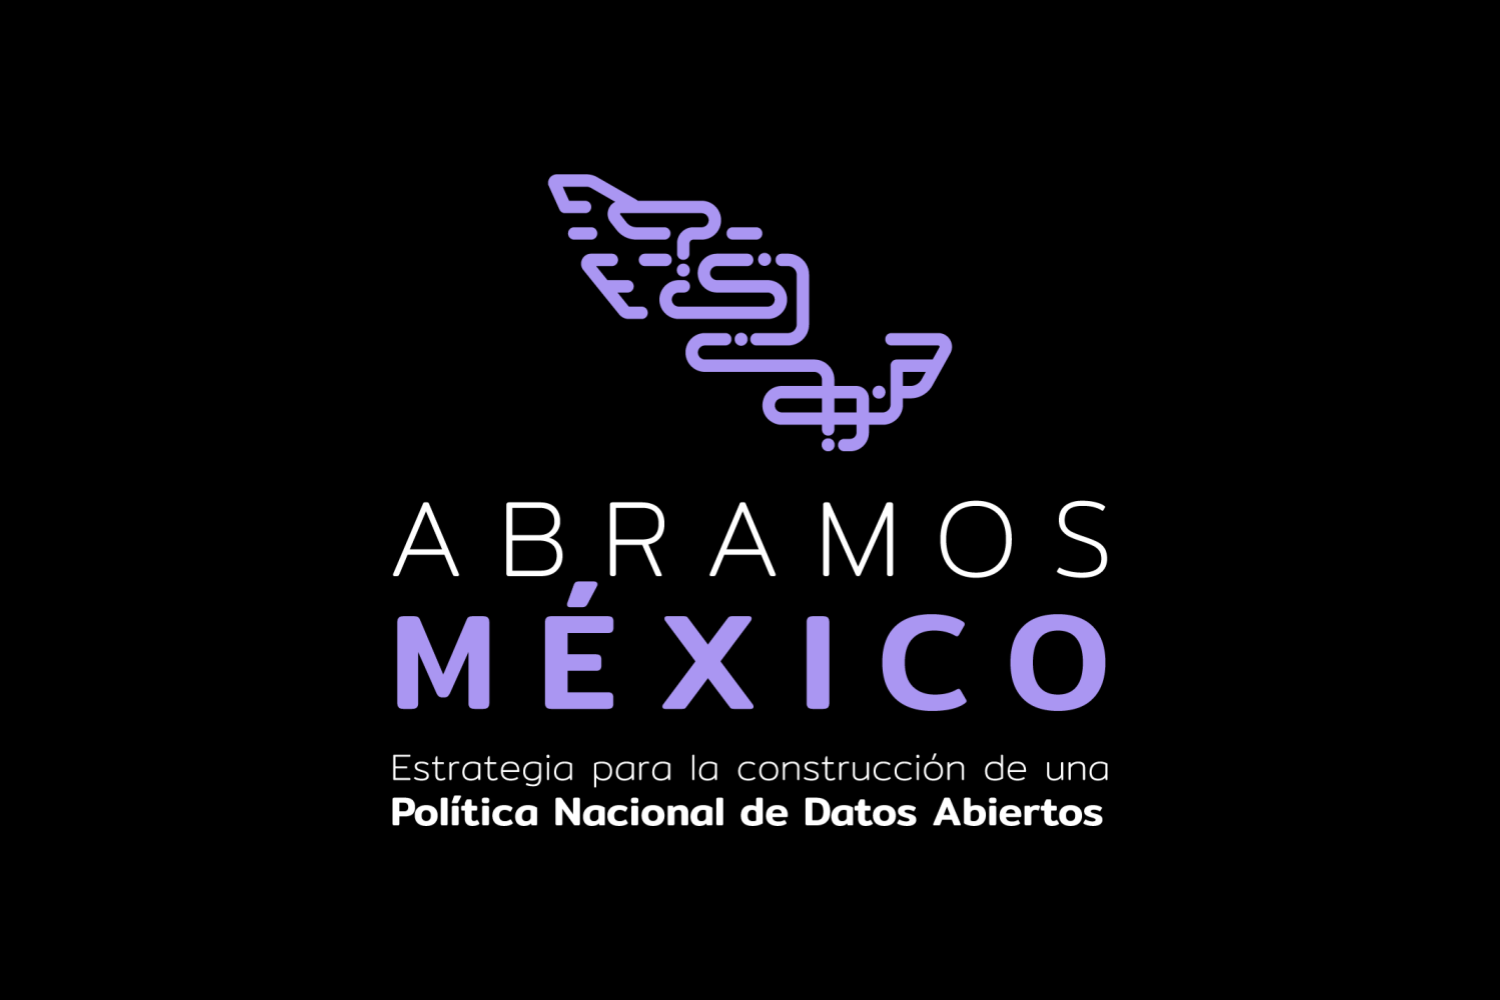 Icono de despliegue para Abramos Mexico